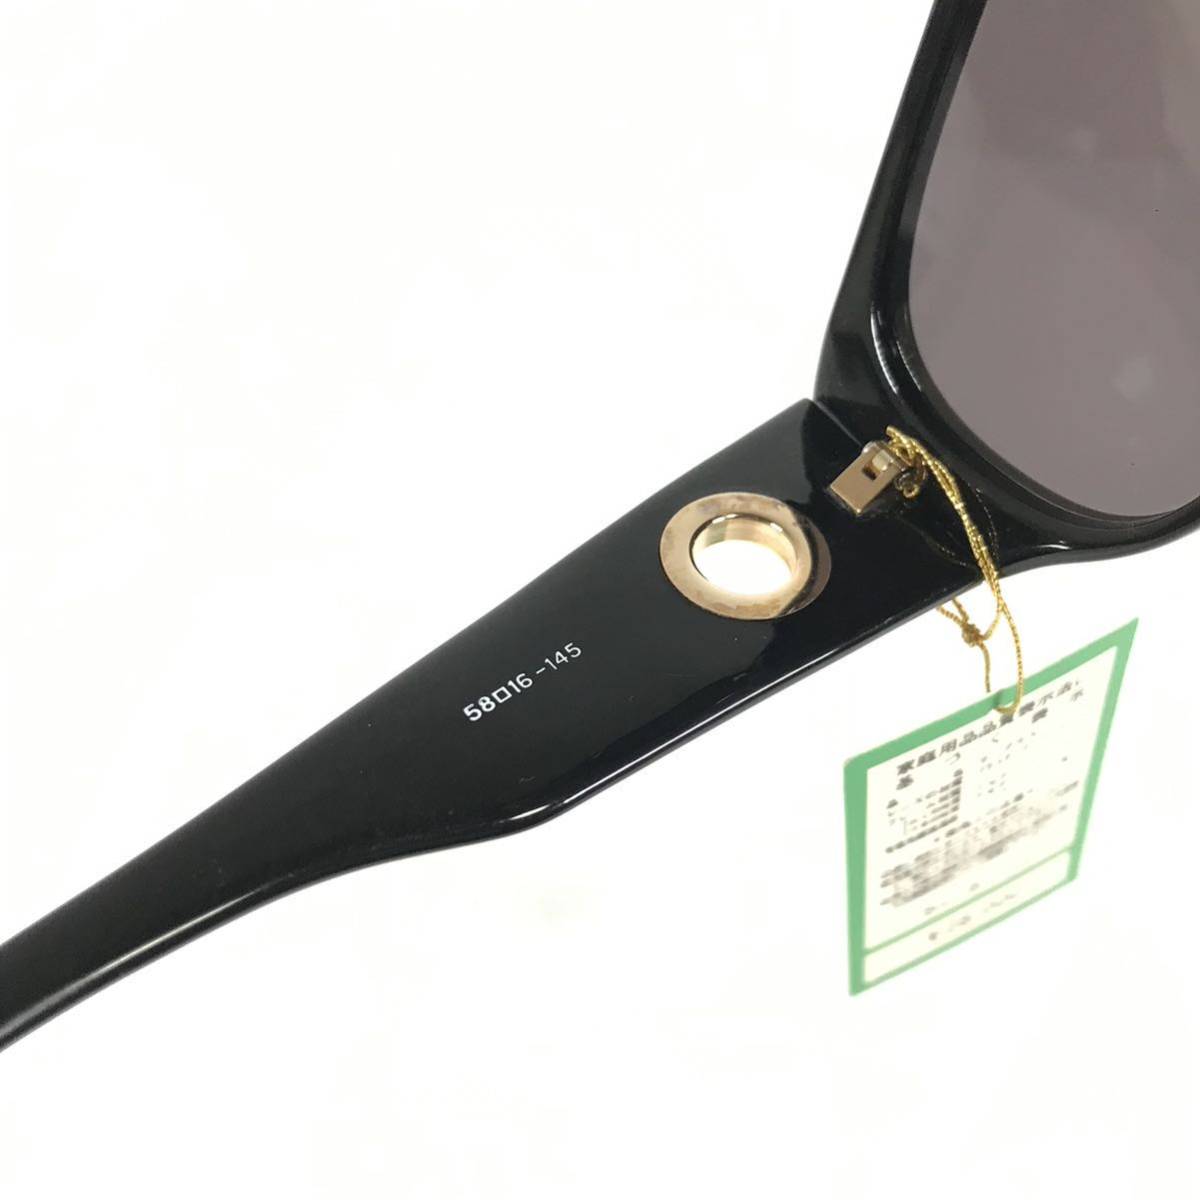  не использовался товар [ Castelbajac ] подлинный товар Castelbajac солнцезащитные очки Logo металлические принадлежности 9004 серый × чёрный цвет серия мужской женский обычная цена 2.8 десять тысяч иен стоимость доставки 520 иен 3